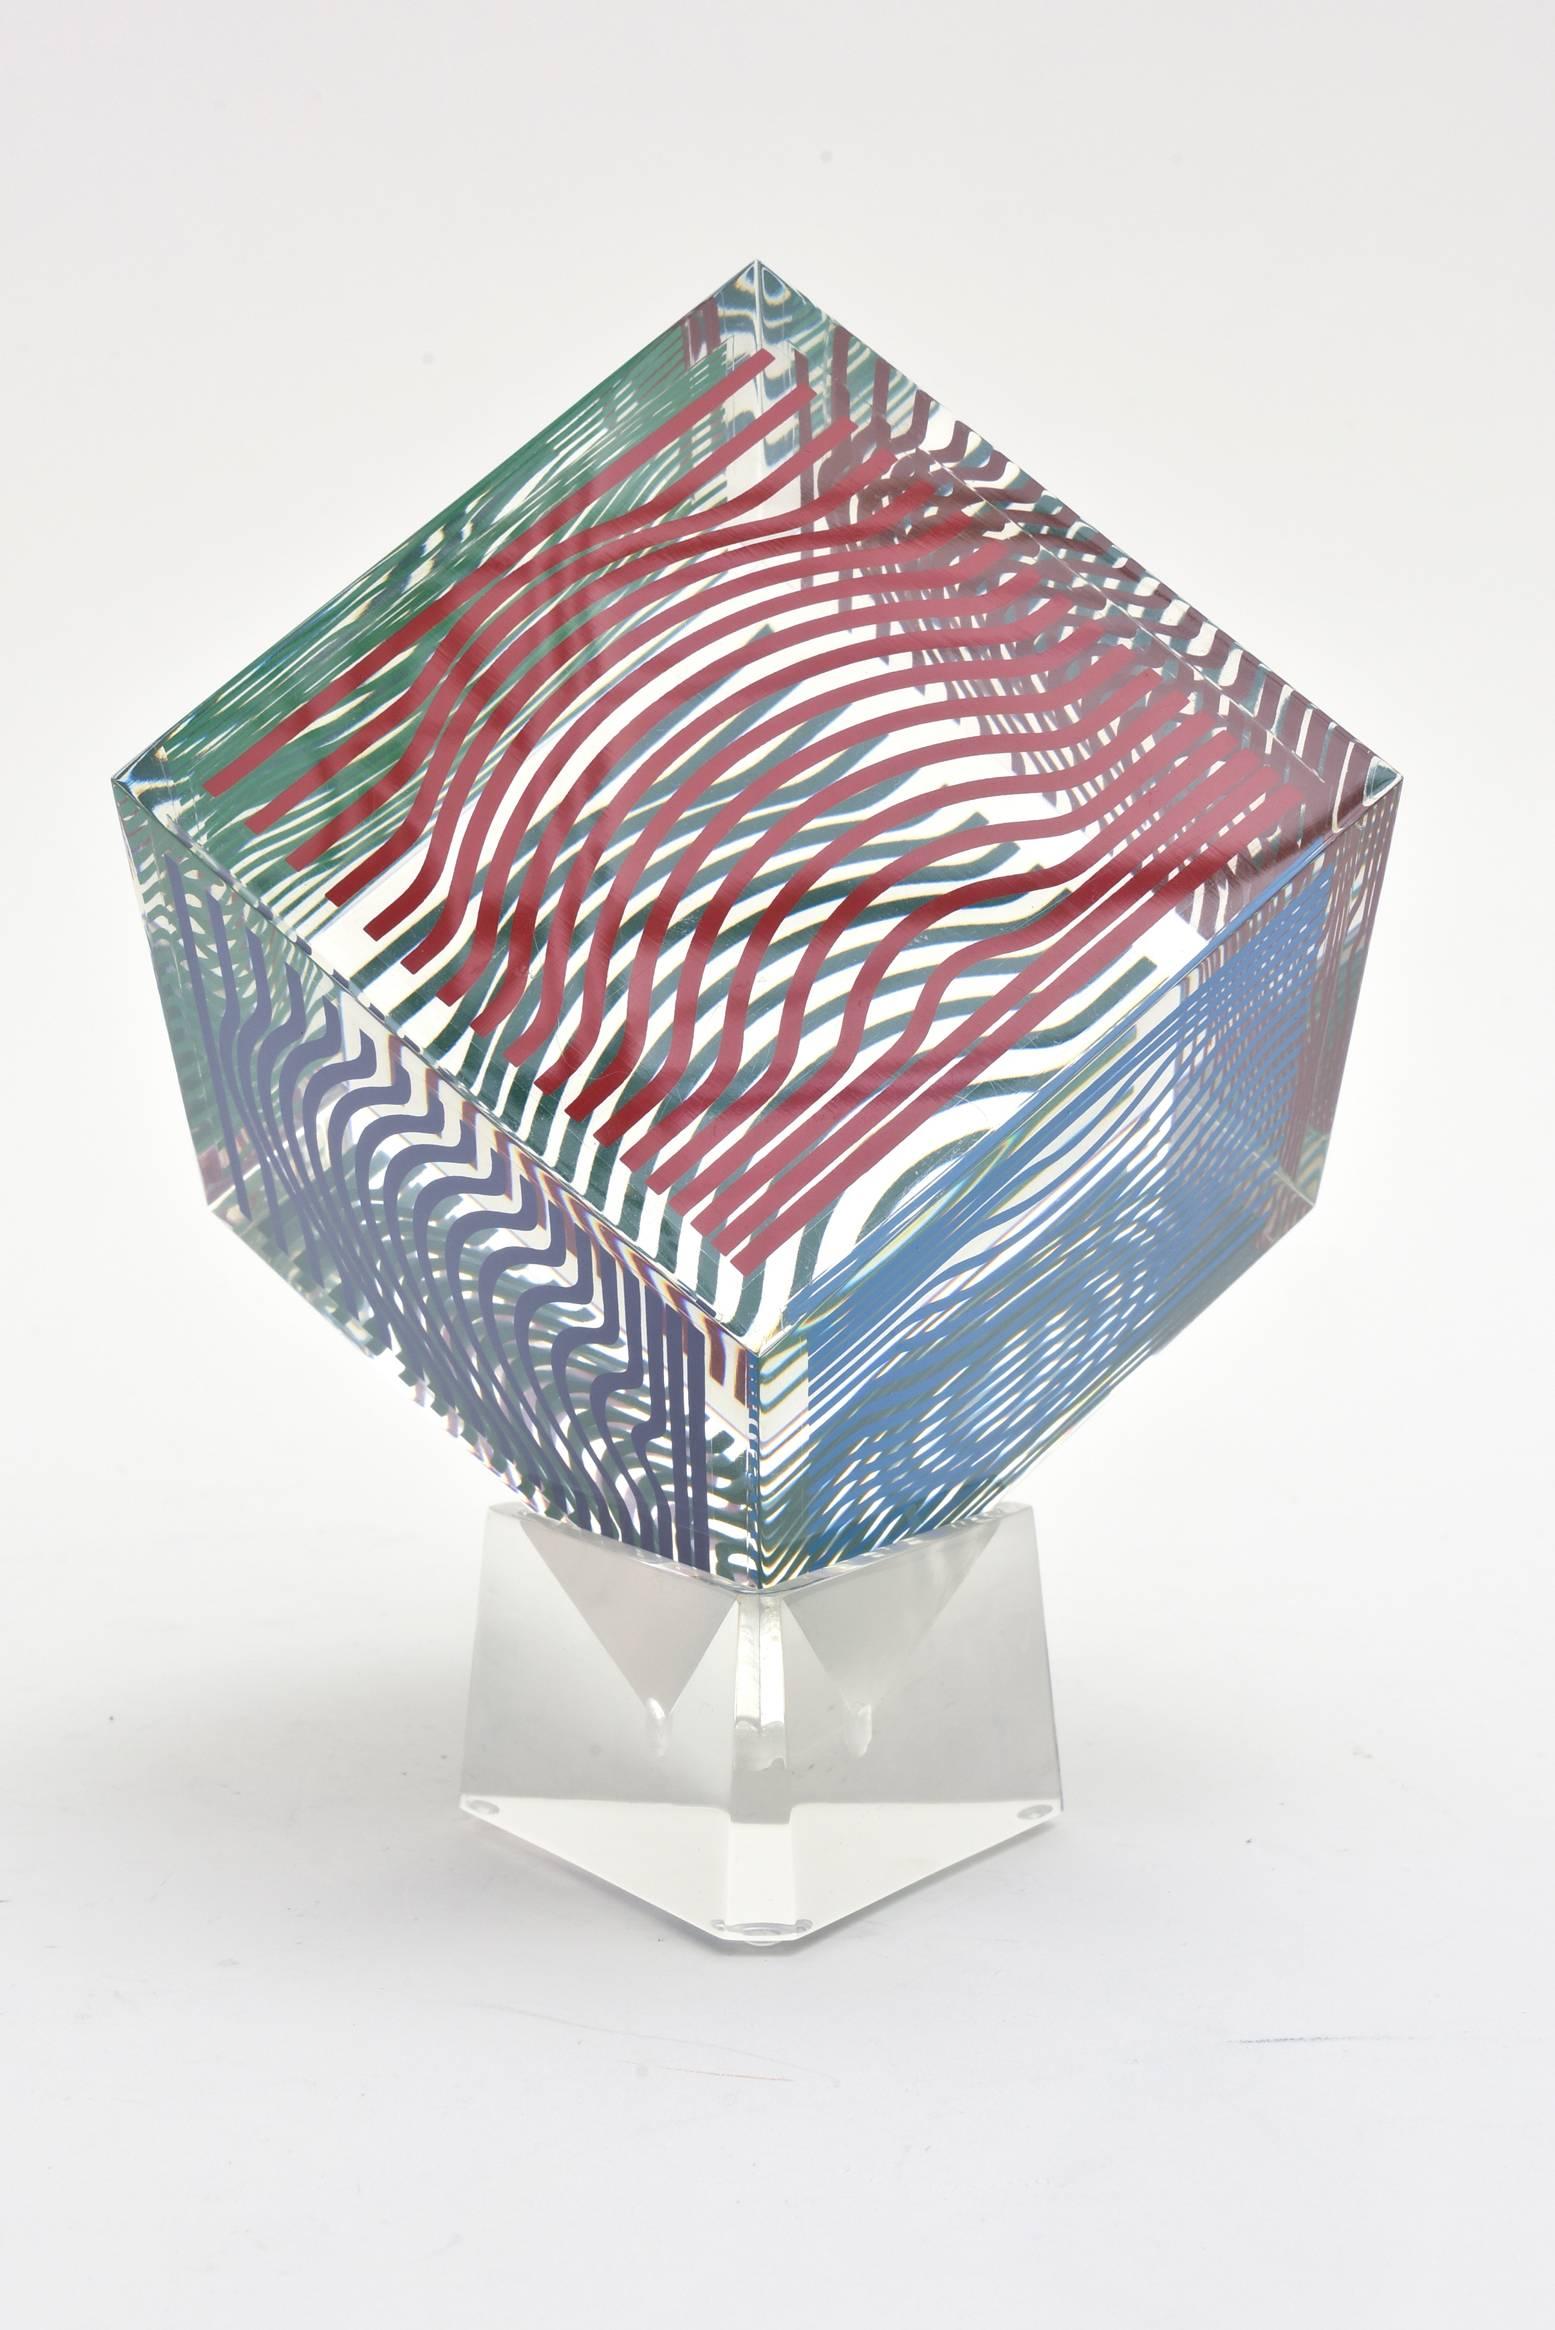 Cette sculpture cube Op Art Optique lucite vintage de Victor Vasarely est une œuvre vintage des années 1970. Elles ont été produites en grande quantité à l'époque mais n'ont pas été numérotées. Il s'agit d'une sérigraphie acrylique. Il n'est pas